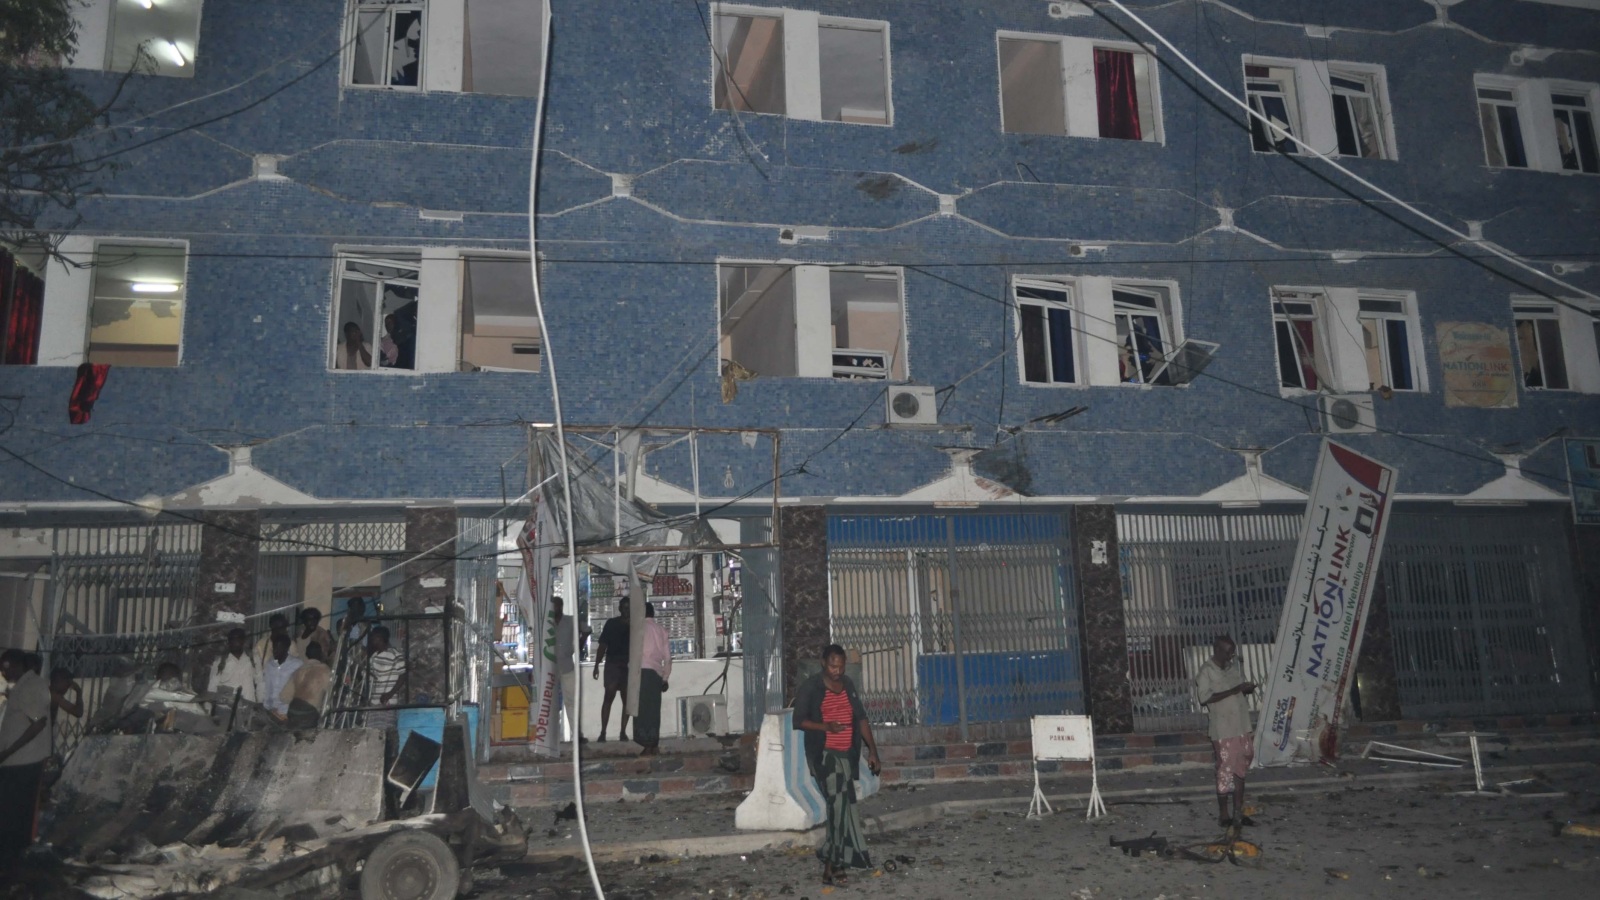 واجهة فندق وهلية في مقديشو بعد تعرضه للهجوم (الجزيرة نت)